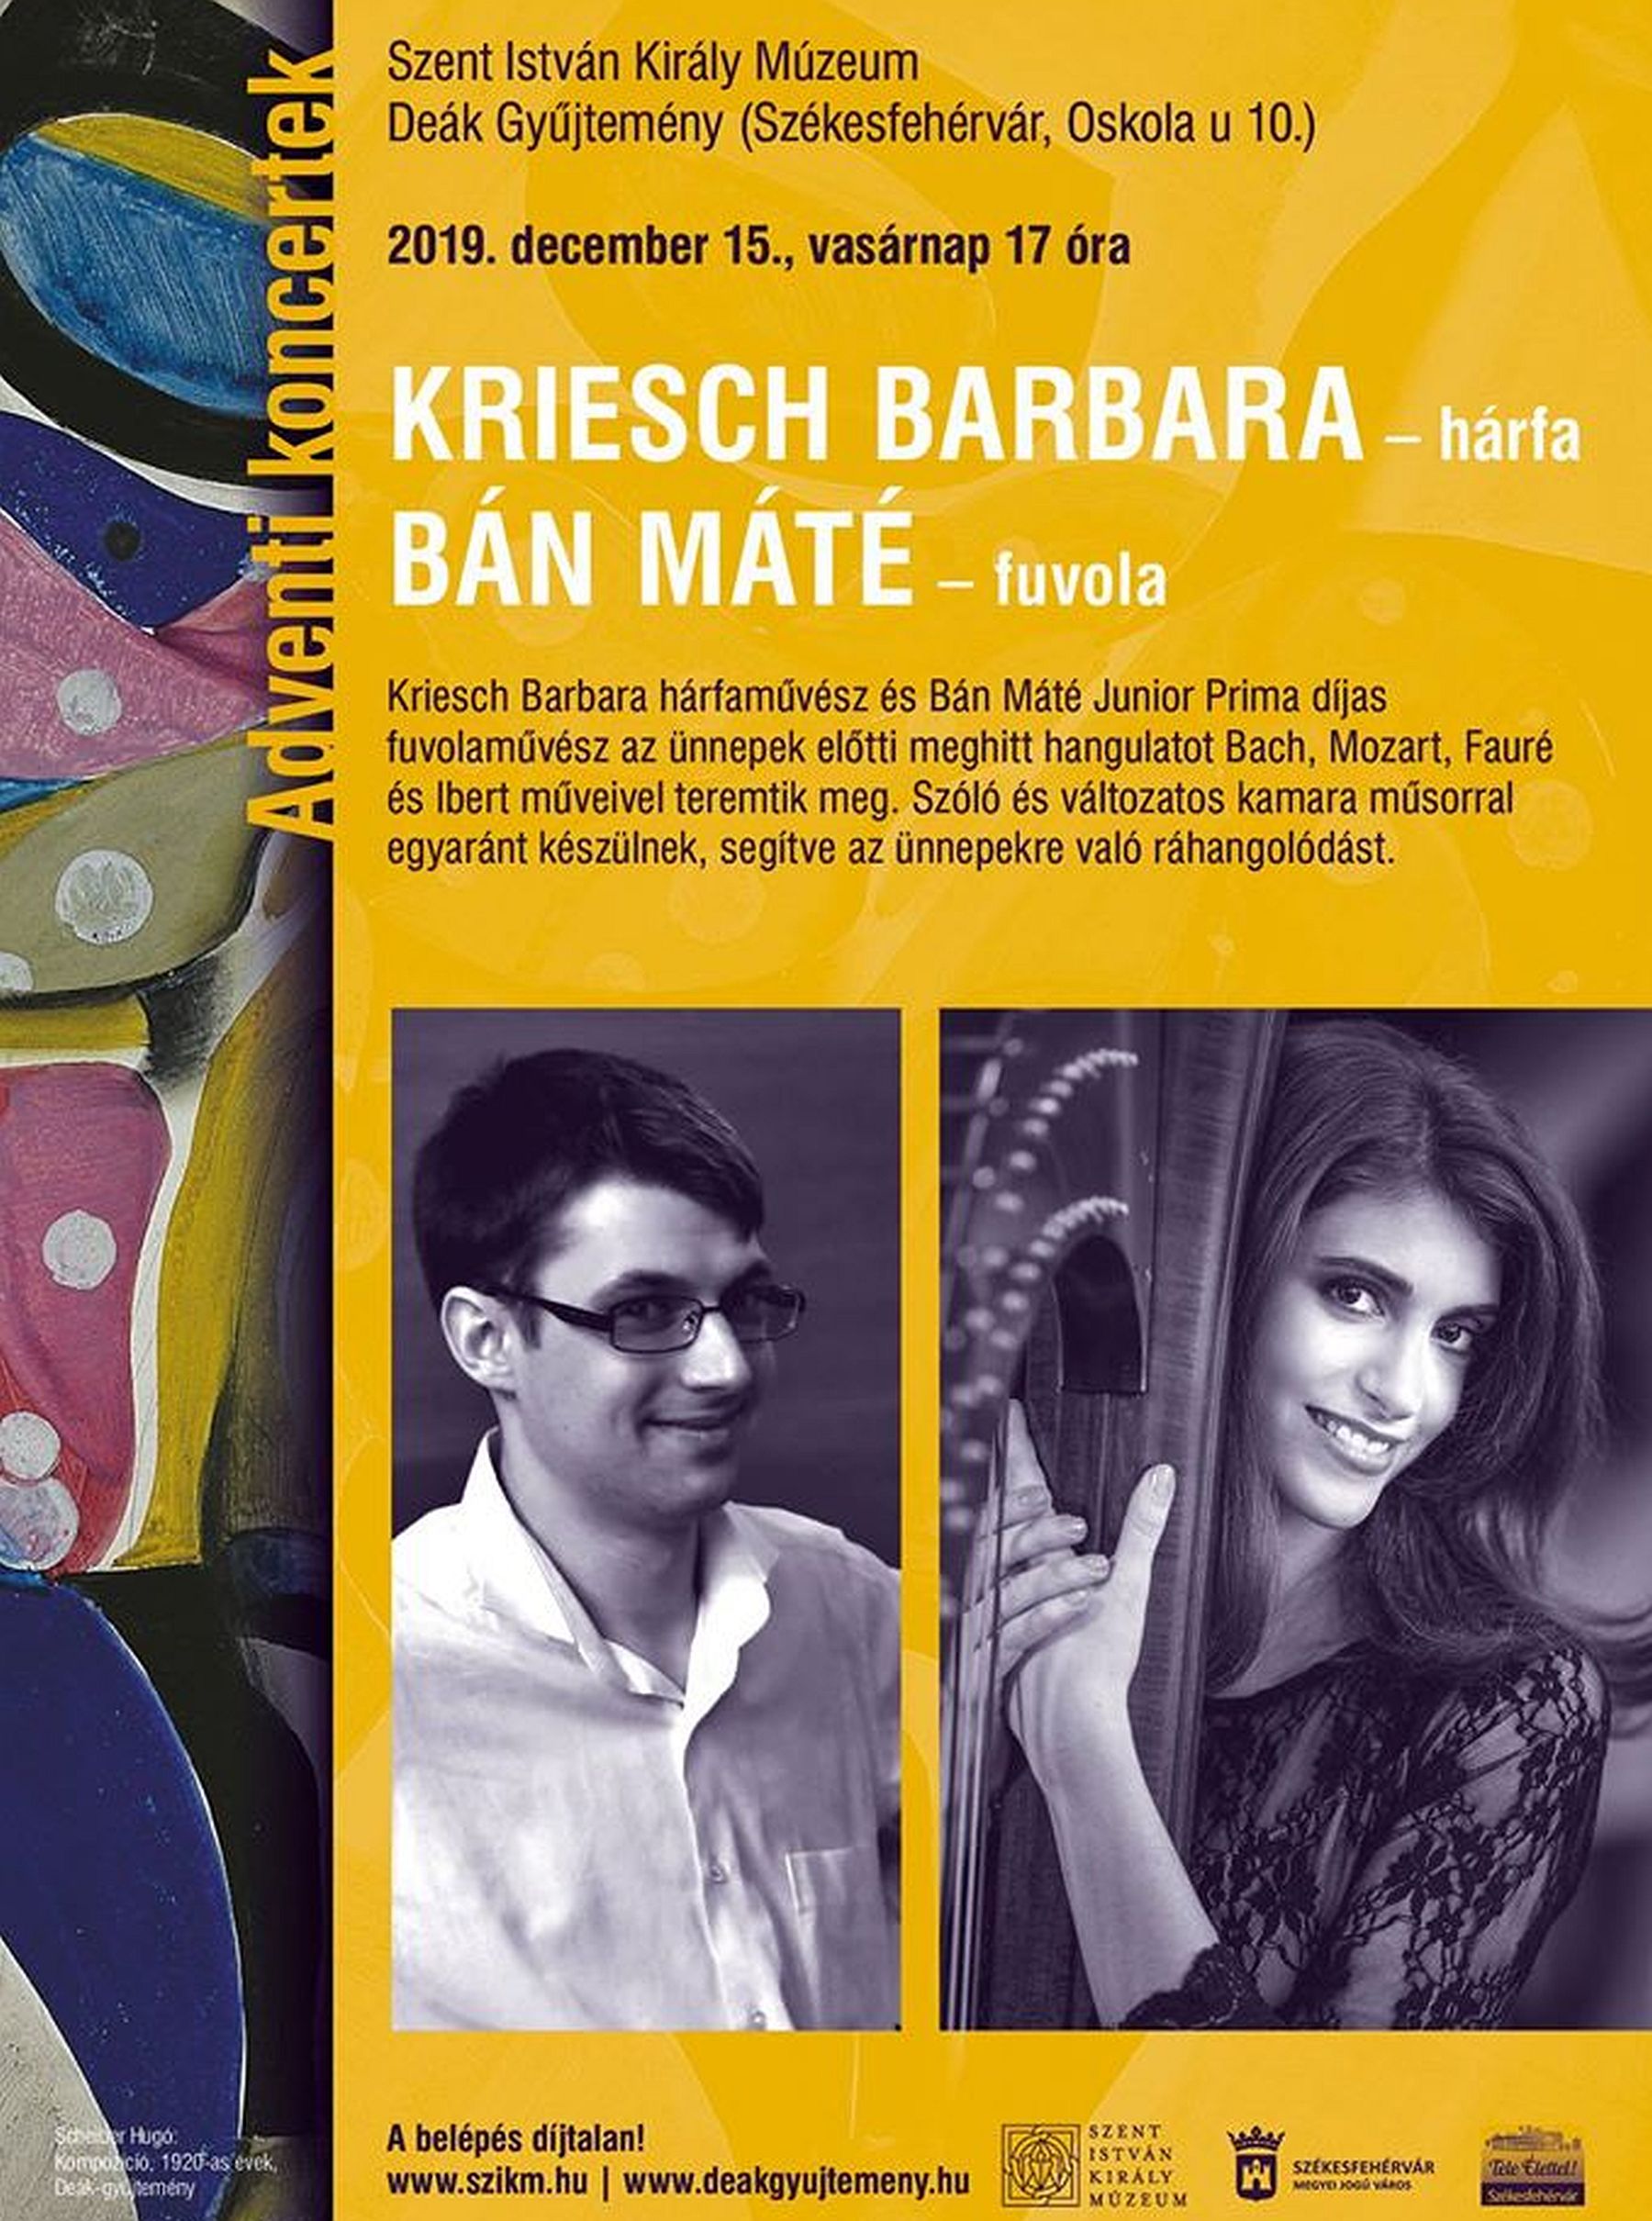 Kriesch Barbara és Bán Máté adventi koncertje vasárnap a Városi Képtárban